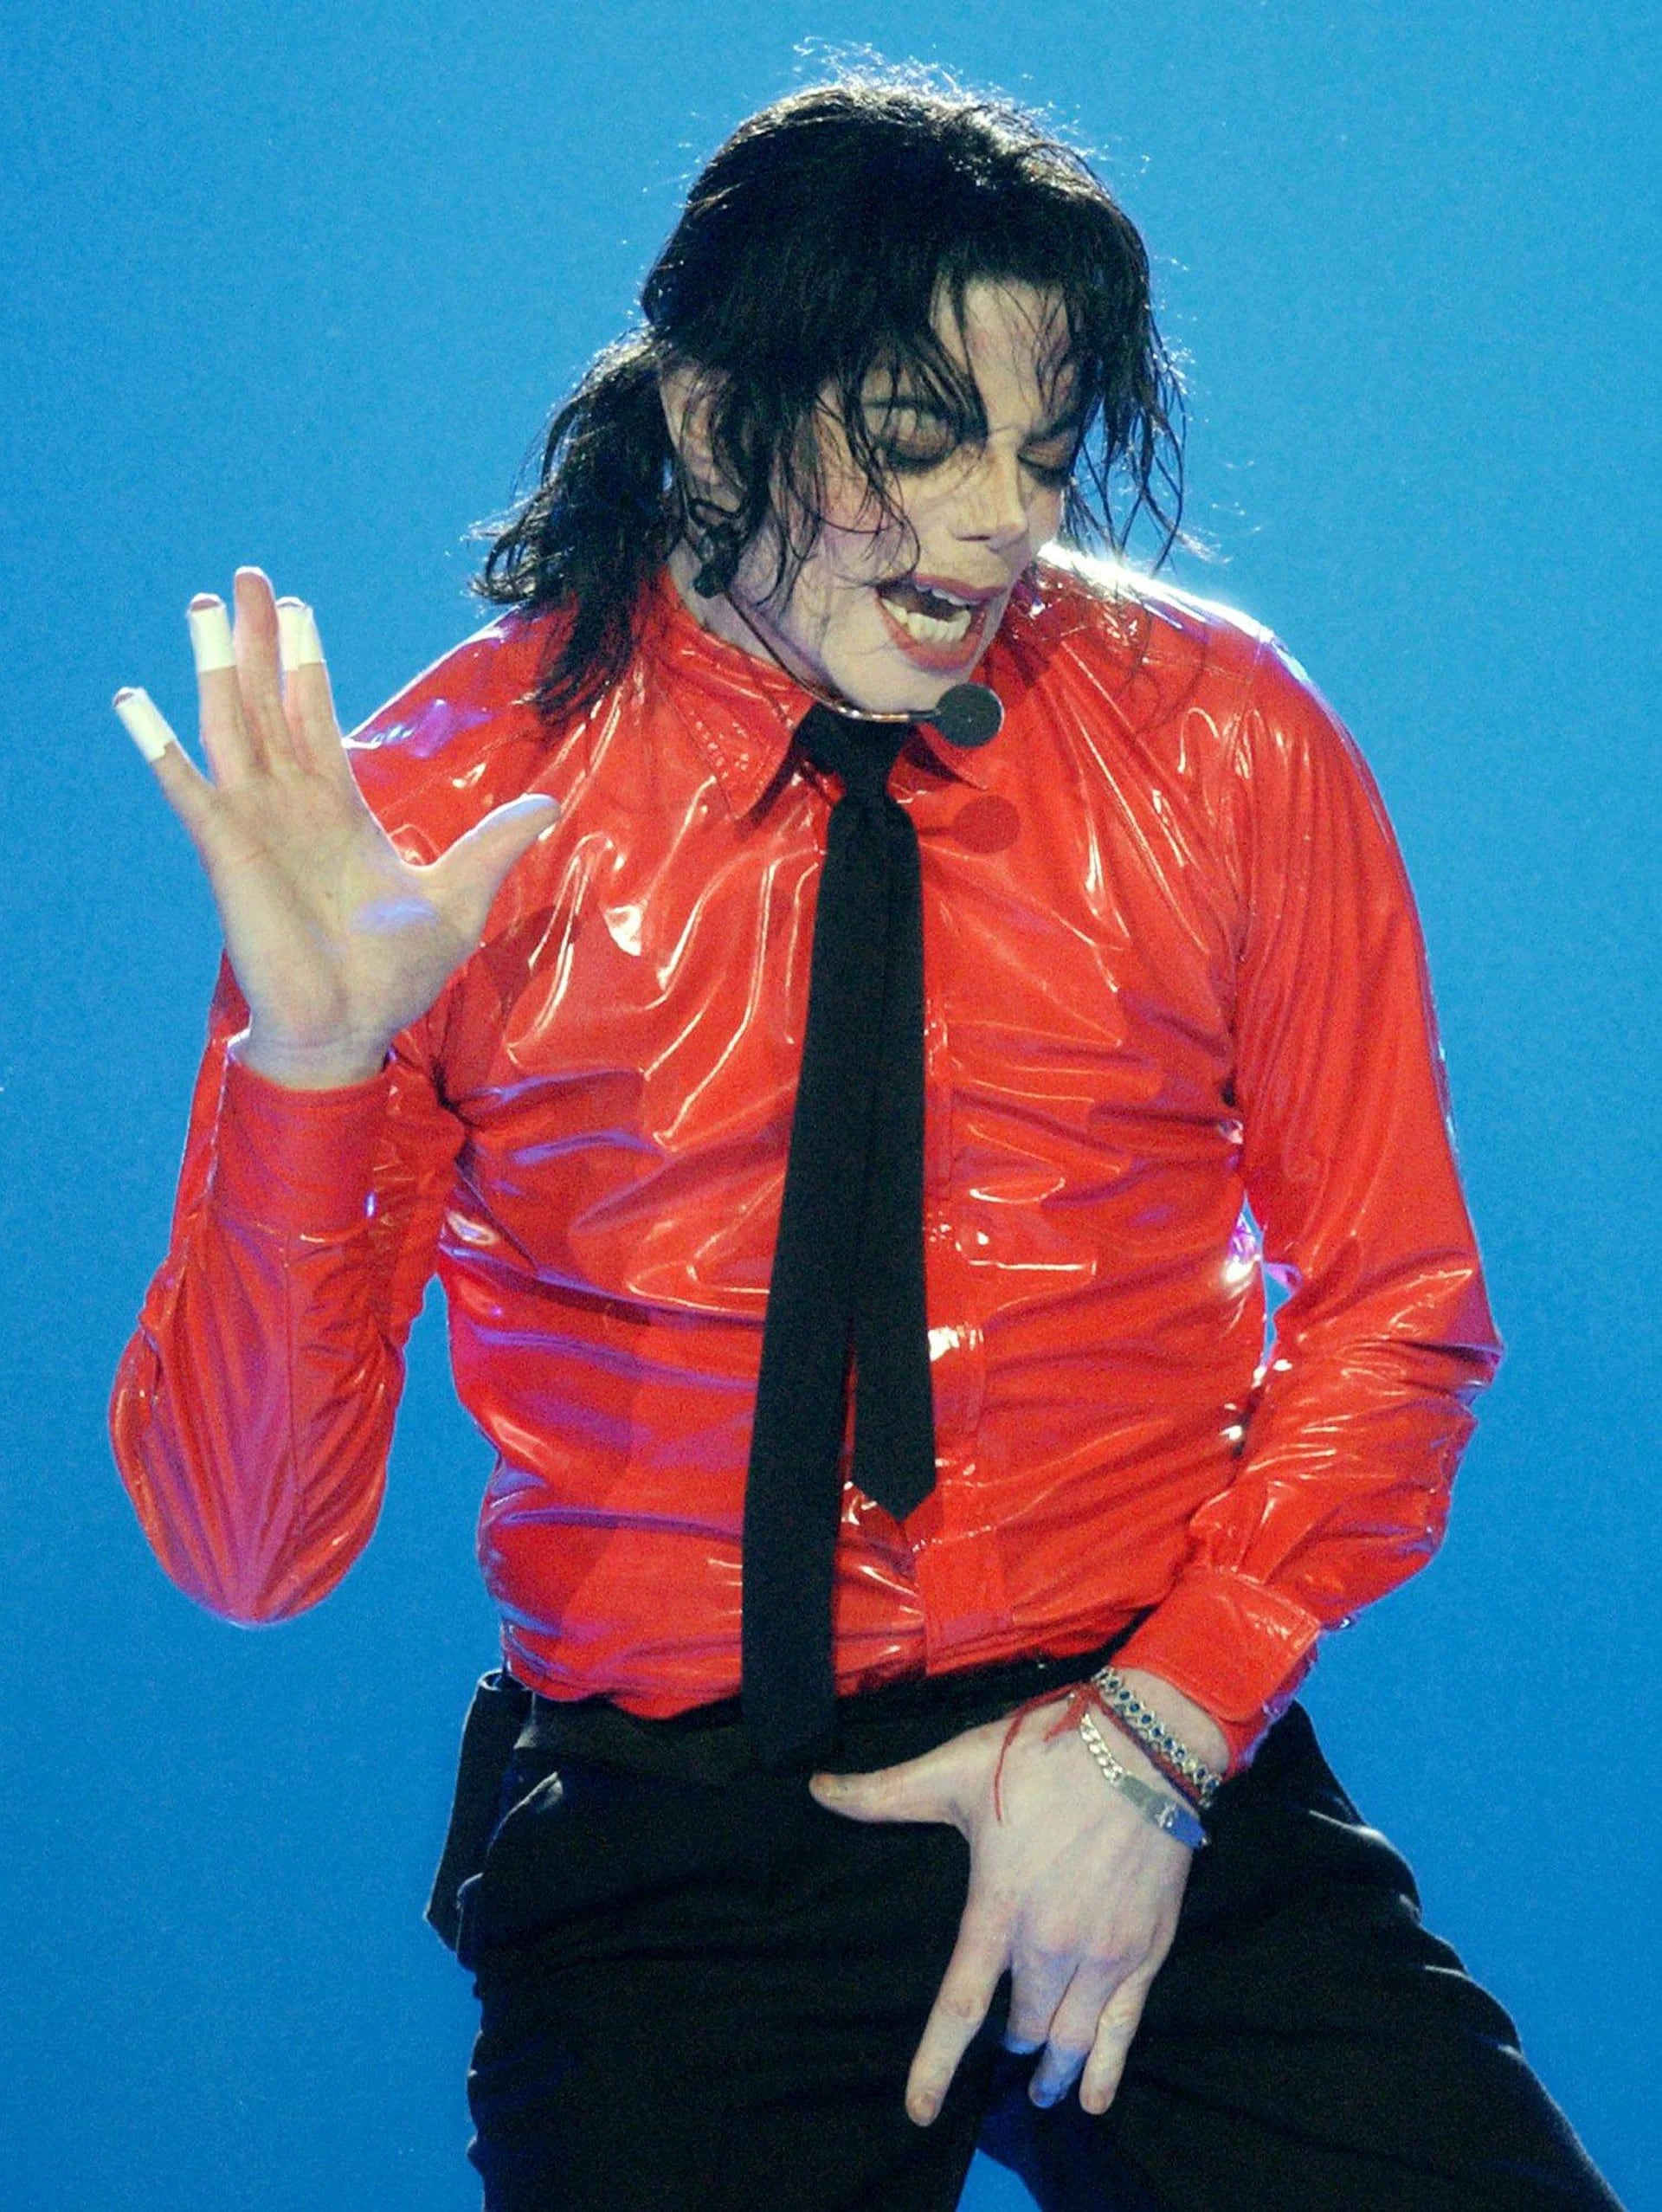 Michael Jackson cantando “Dangerous” en el 50 aniversario de American Bandstand, en Pasadena, California (Abril del 2002)